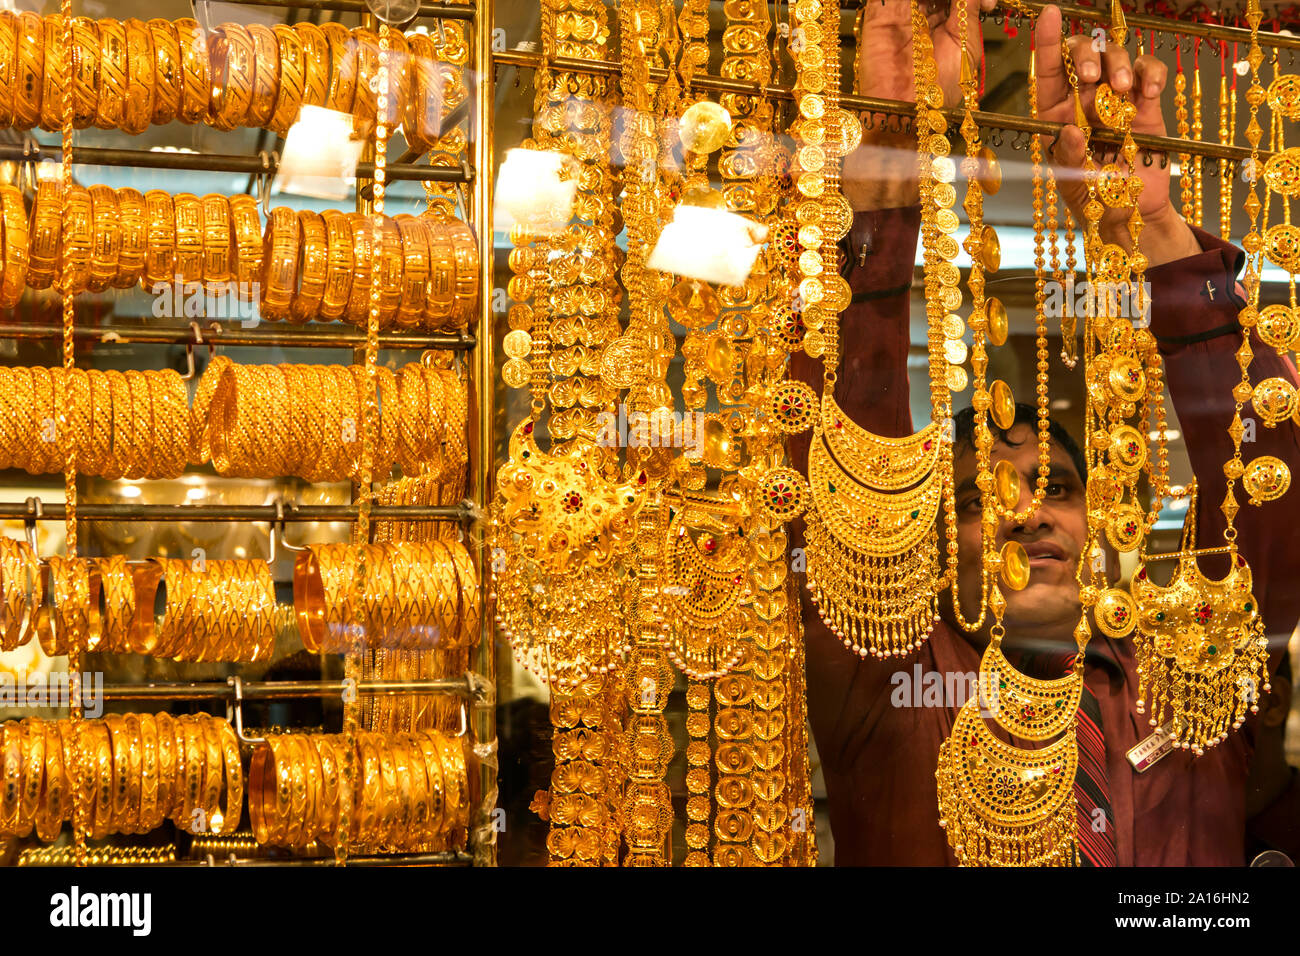 DUBAI - ein ladenbesitzer nimmt eine goldene Halskette aus seinem Fenster Anzeige im Gold Souk. Stockfoto